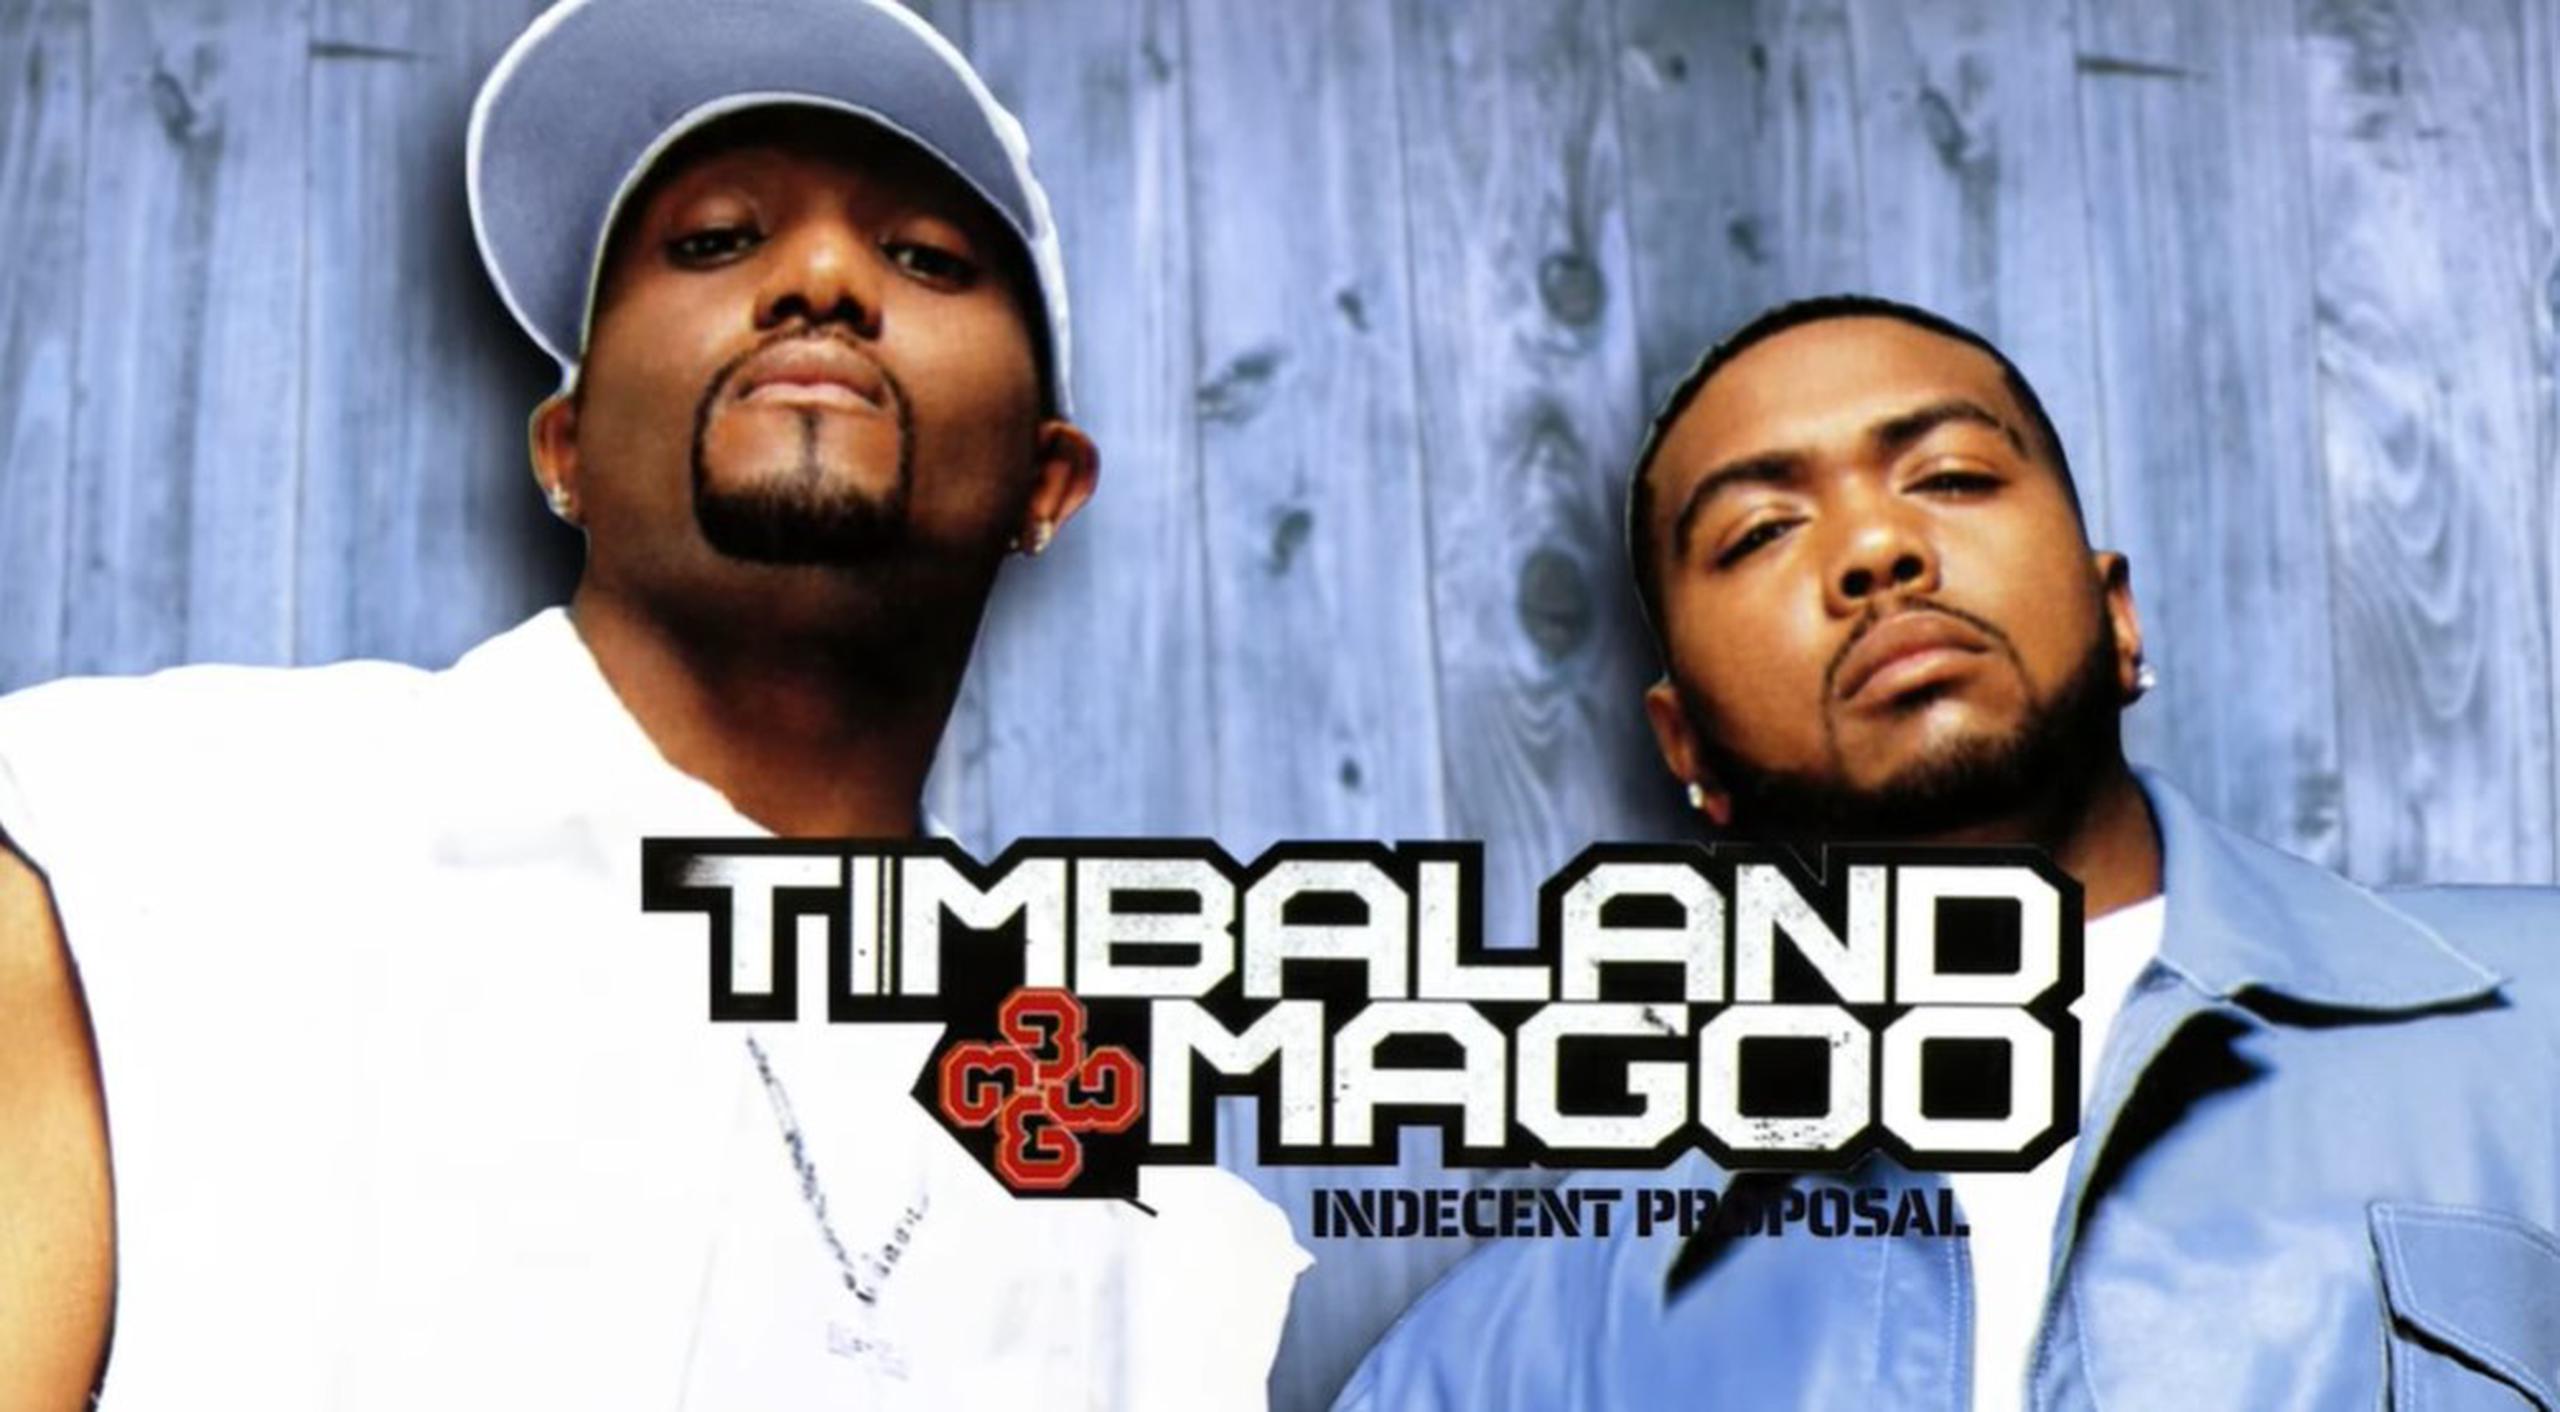 Magoo (izquierda) junto a Timbaland.